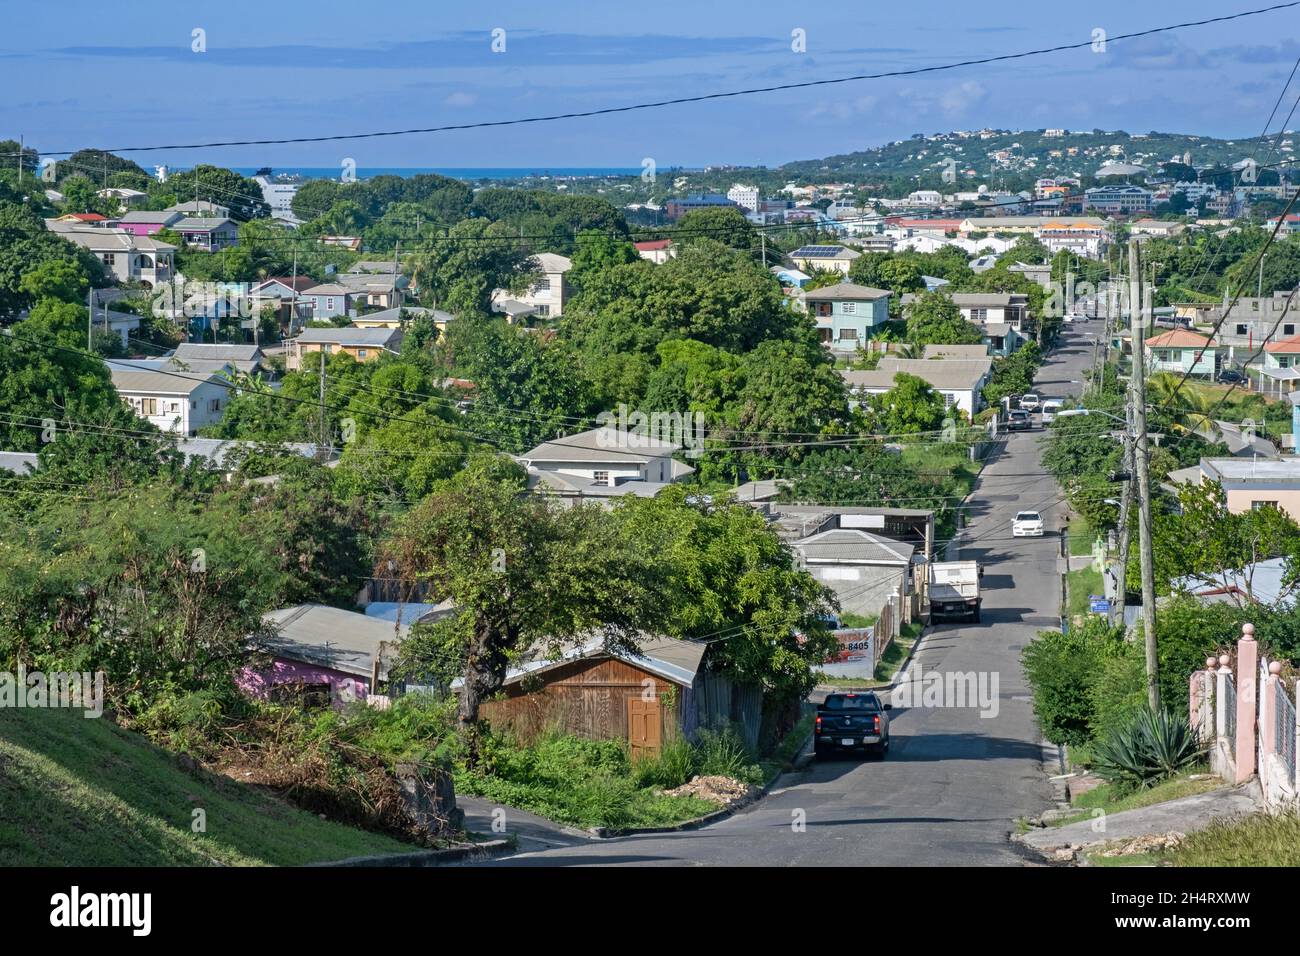 Blick auf St. John's, die Hauptstadt von Antigua und Barbuda, die Kleinen Antillen, Teil der Westindischen Inseln im Karibischen Meer Stockfoto